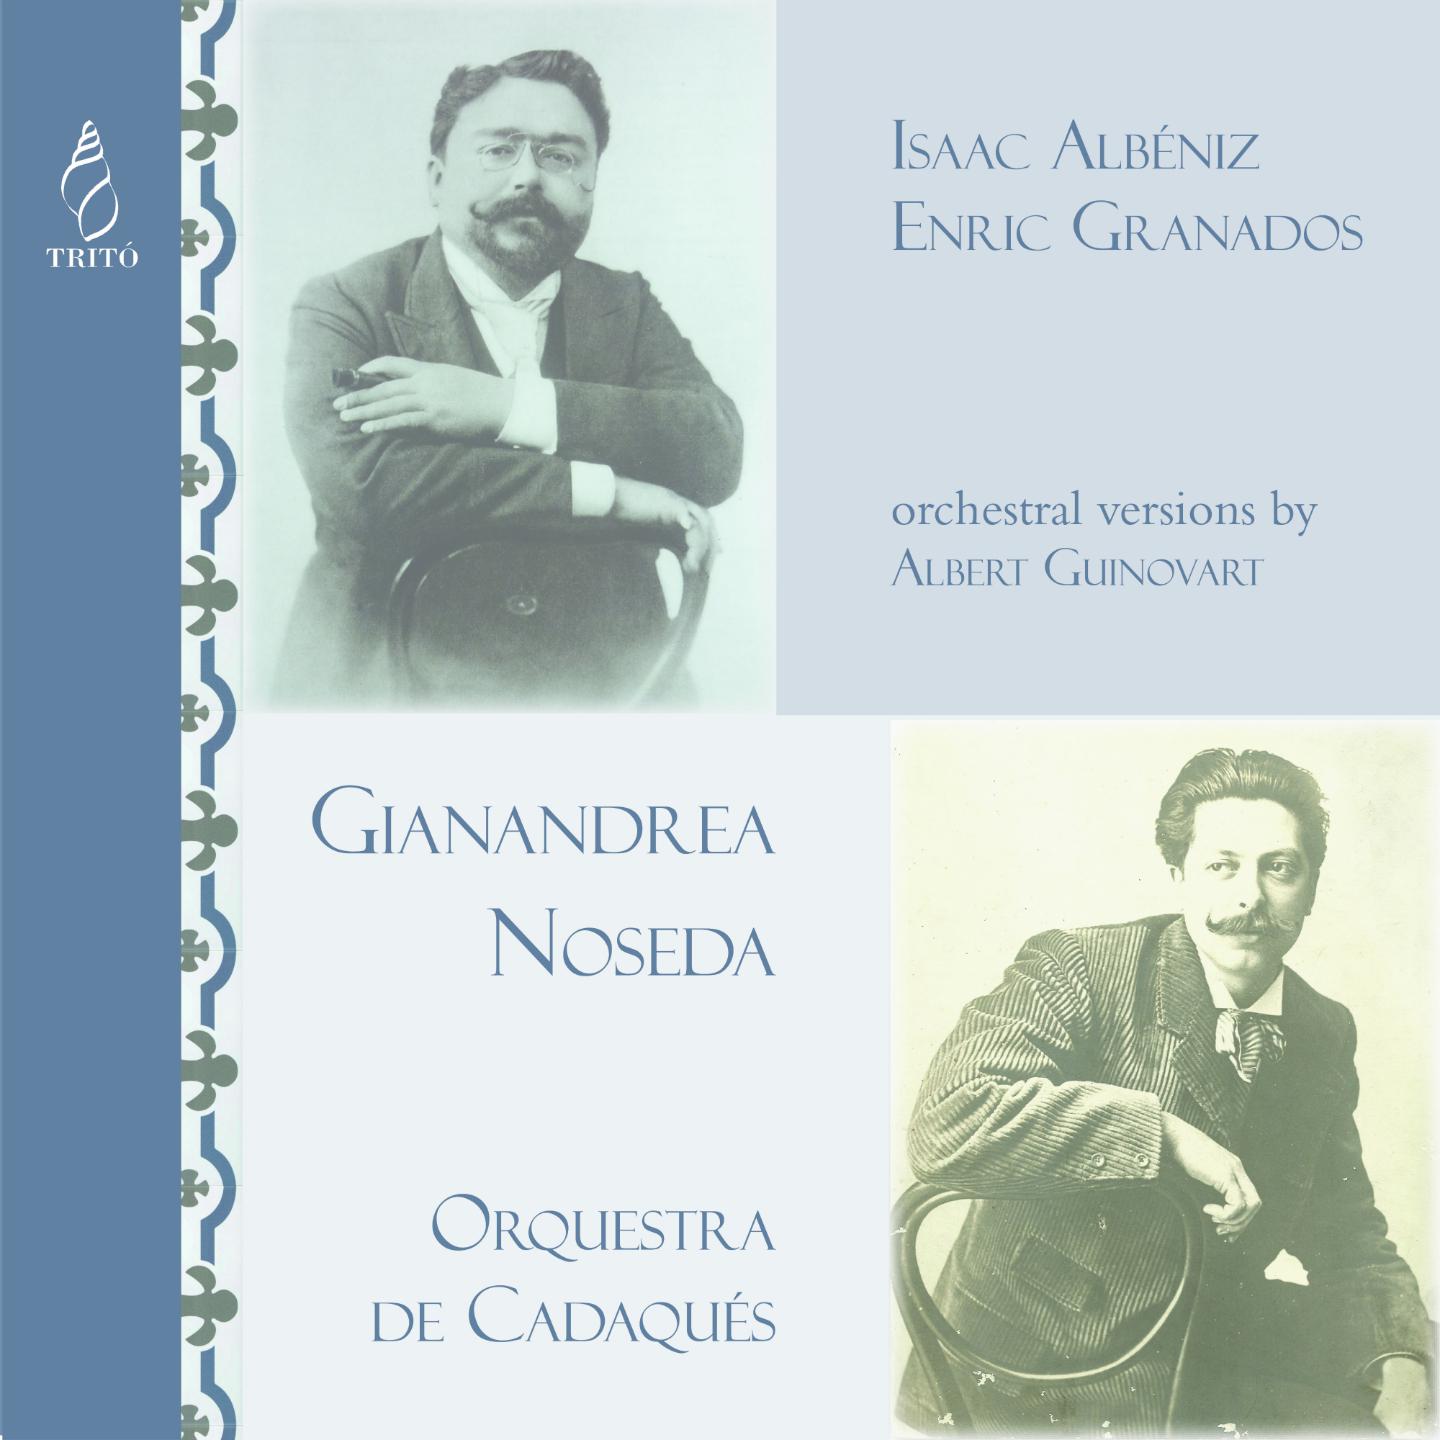 Orquestra de Cadaqués - Balades Italianes:II. Il tuo sguardo